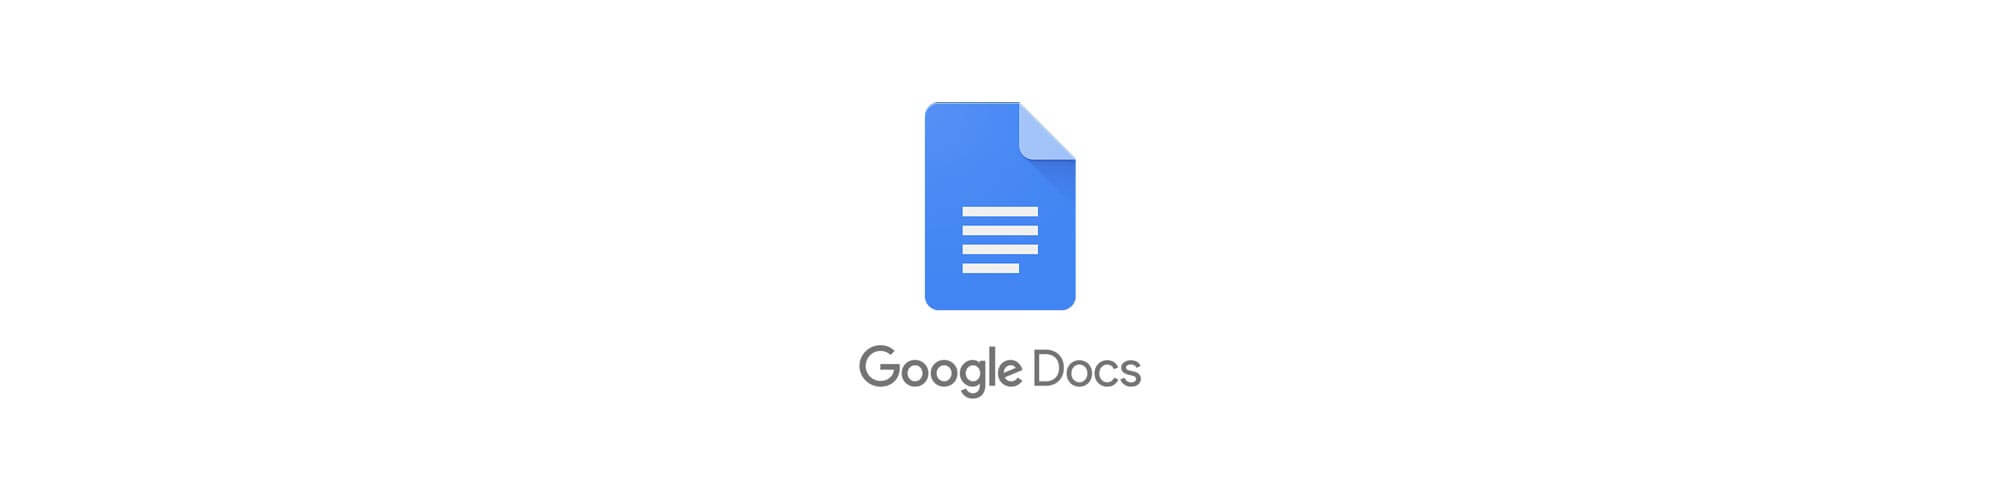          Google Docs